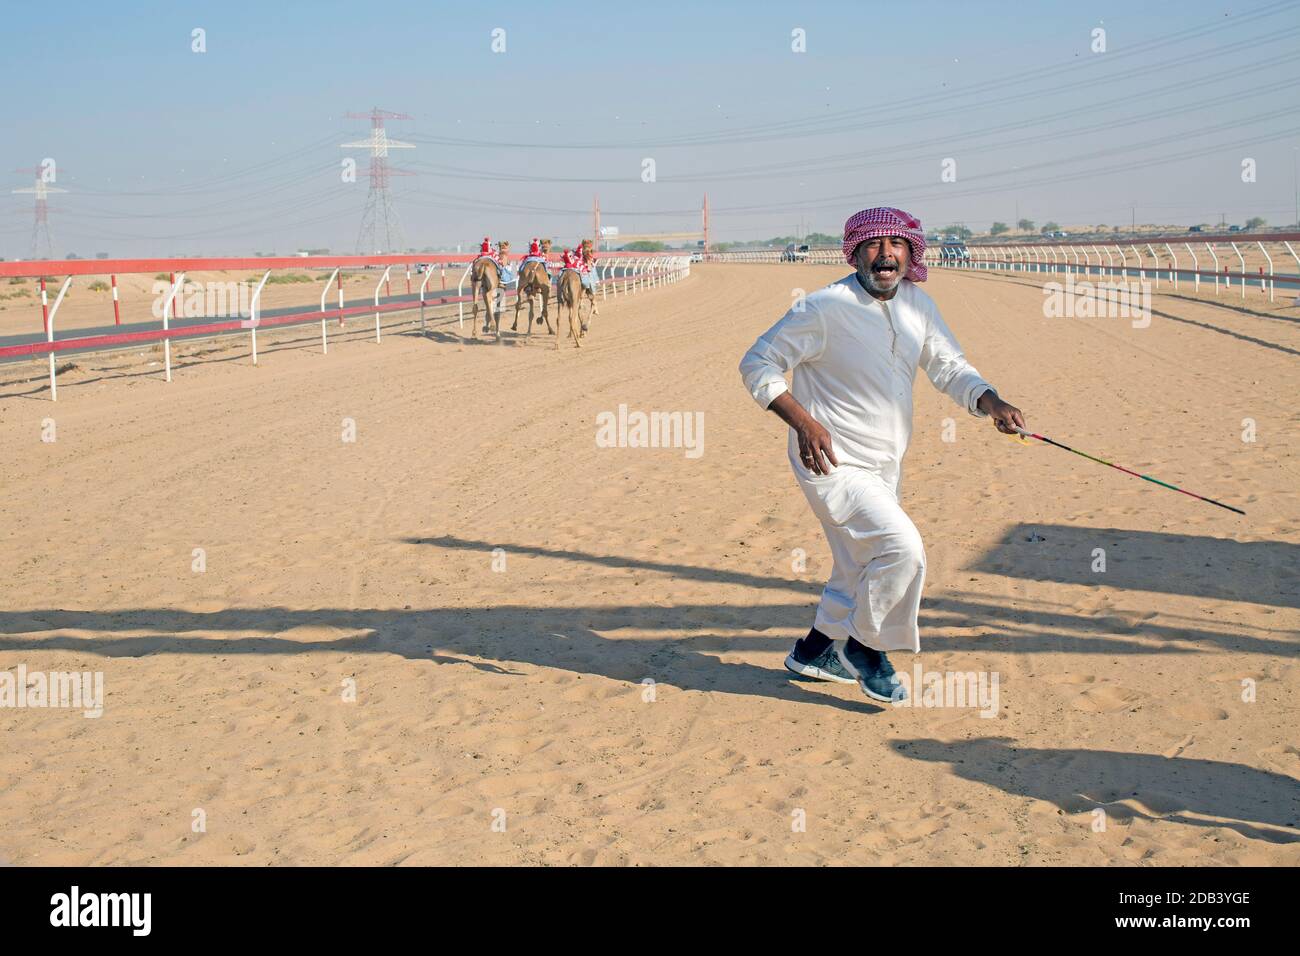 Emirats Arabes Unis / Al Dhaid / entrée du Circuit de course Al Dhaid Camel dans la région centrale de L'Émirat de Sharjah dans l'Émira arabe unie Banque D'Images